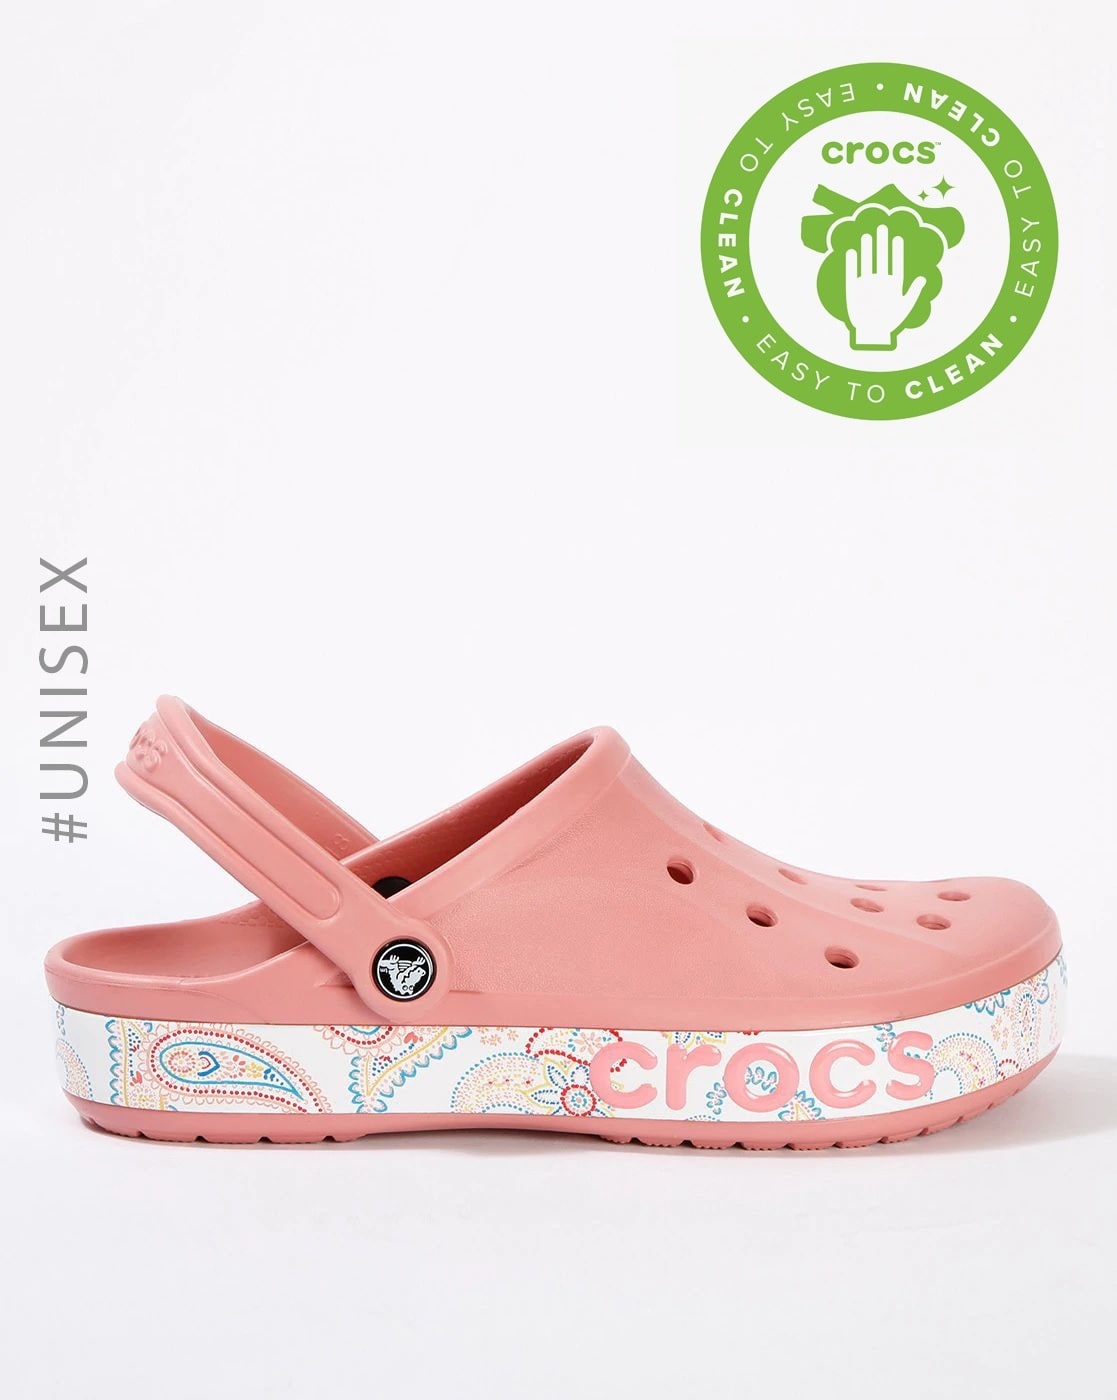 crocs for women online